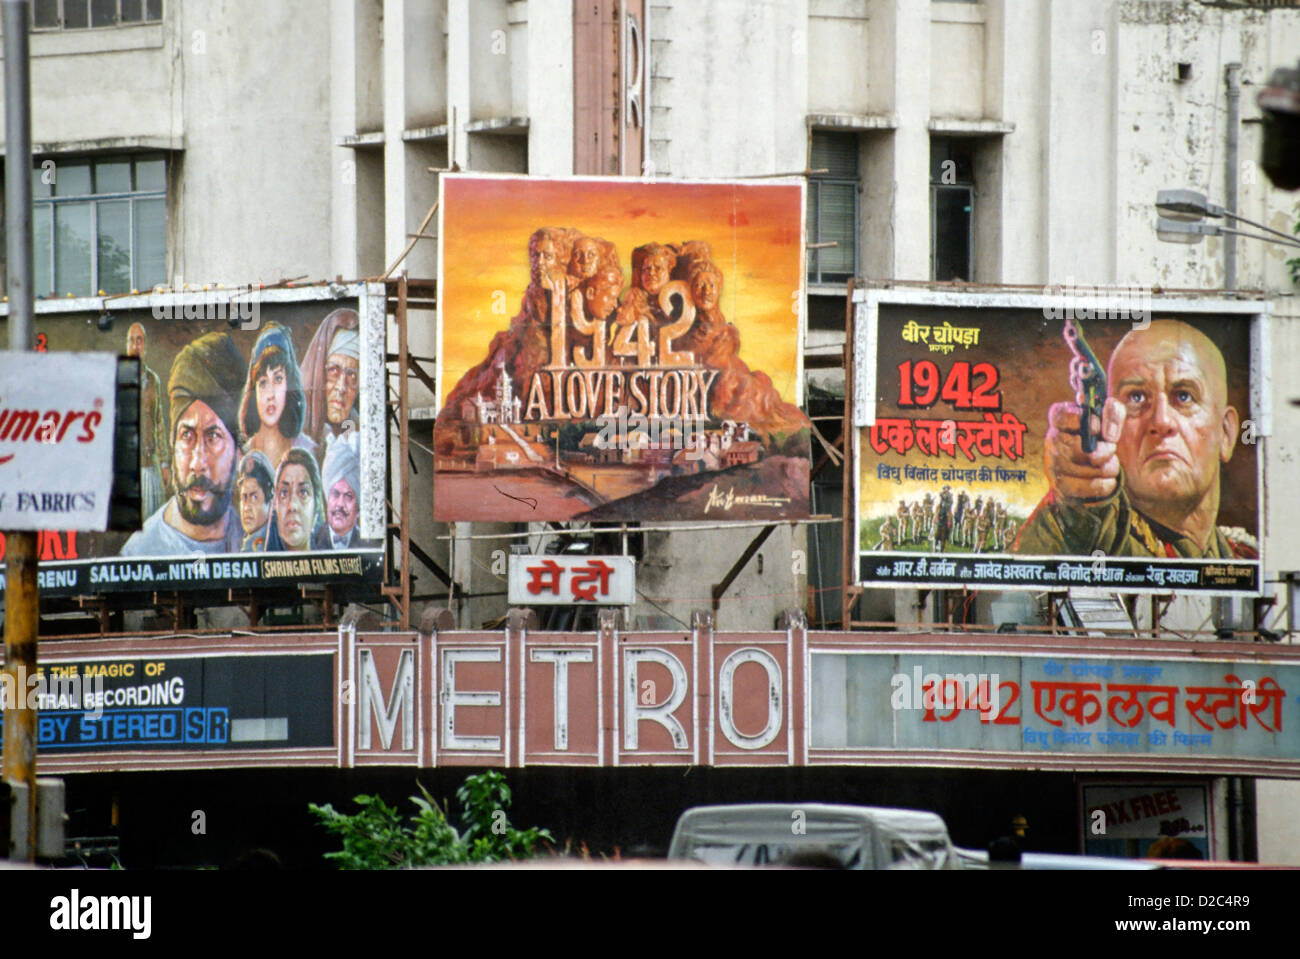 Affiche de film de 1942 Une histoire d'amour à Metro Theatre, Bombay Mumbai, Maharashtra, Inde Banque D'Images